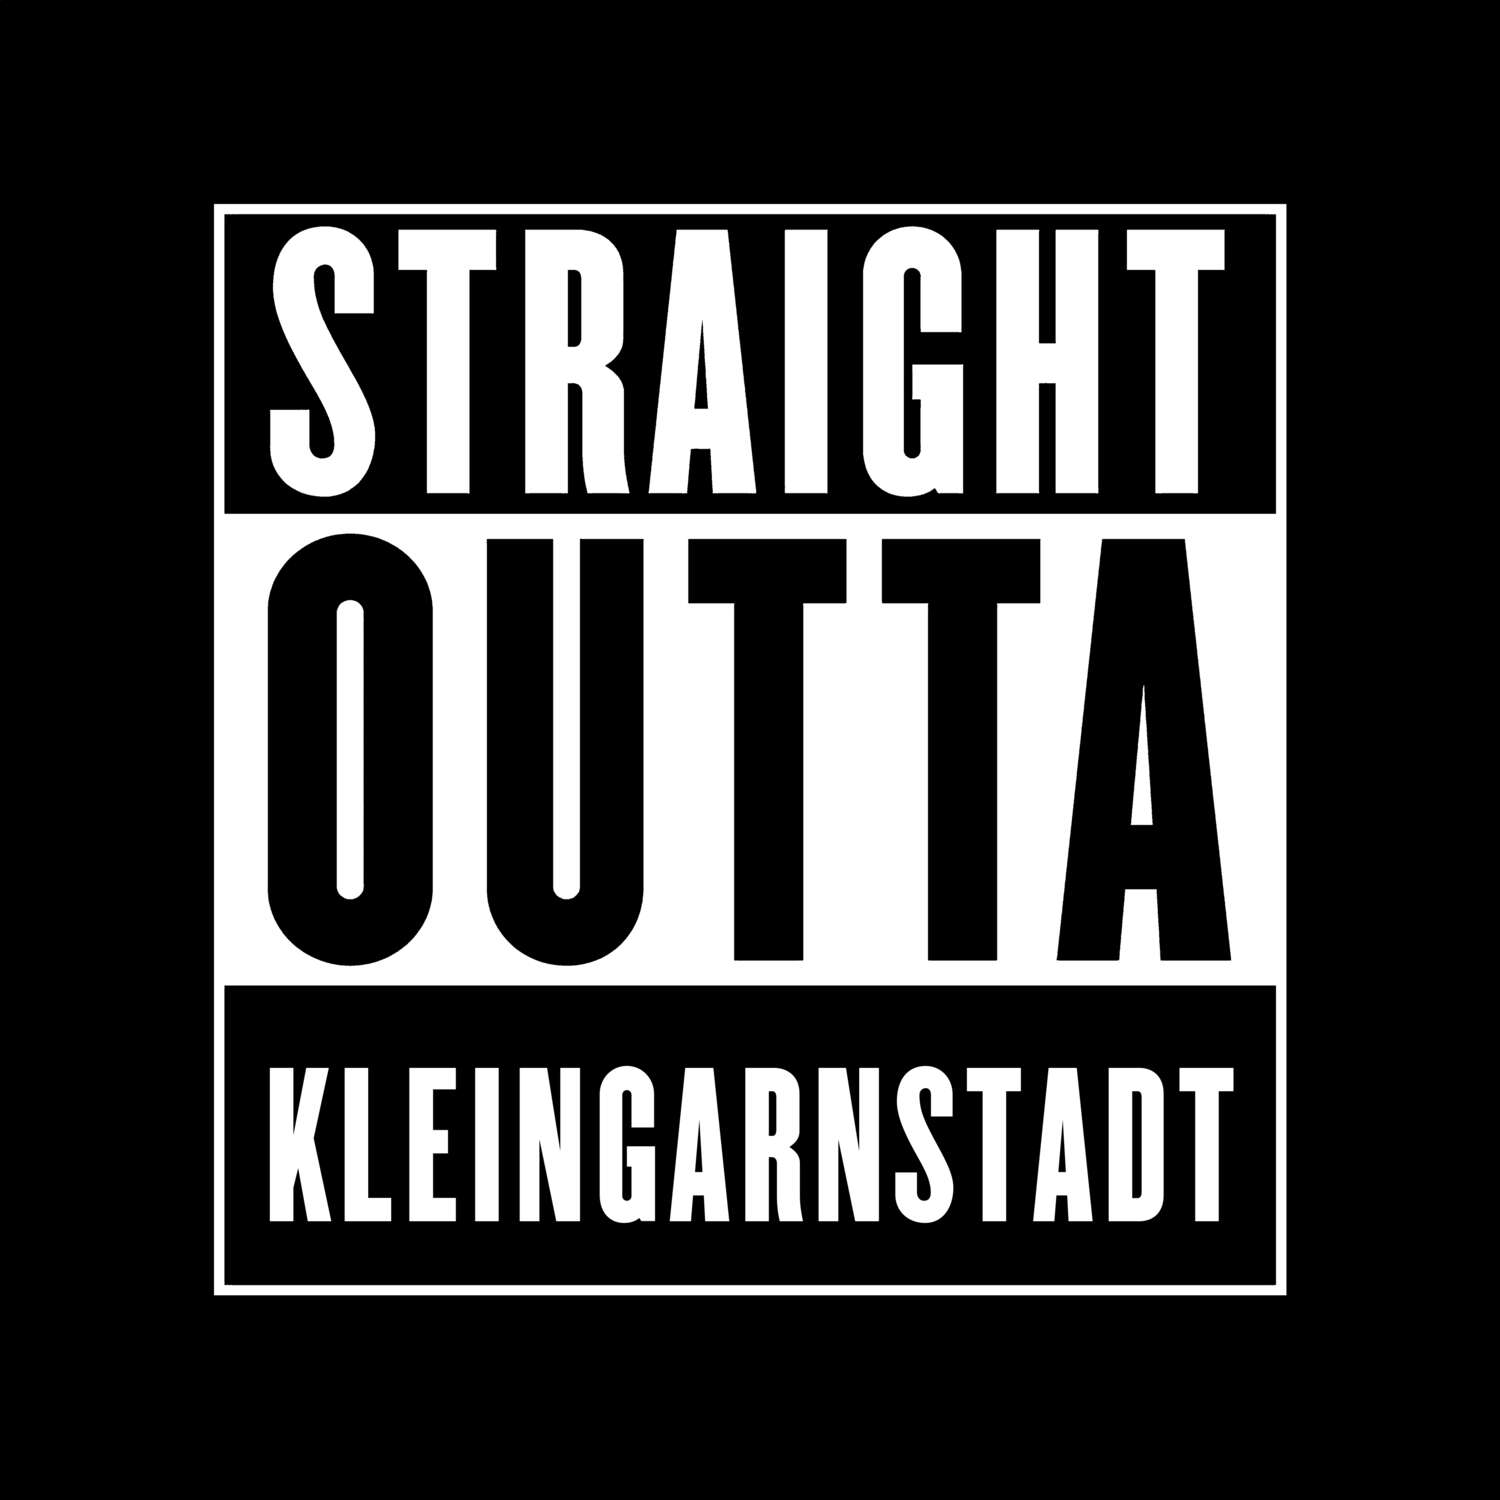 Kleingarnstadt T-Shirt »Straight Outta«